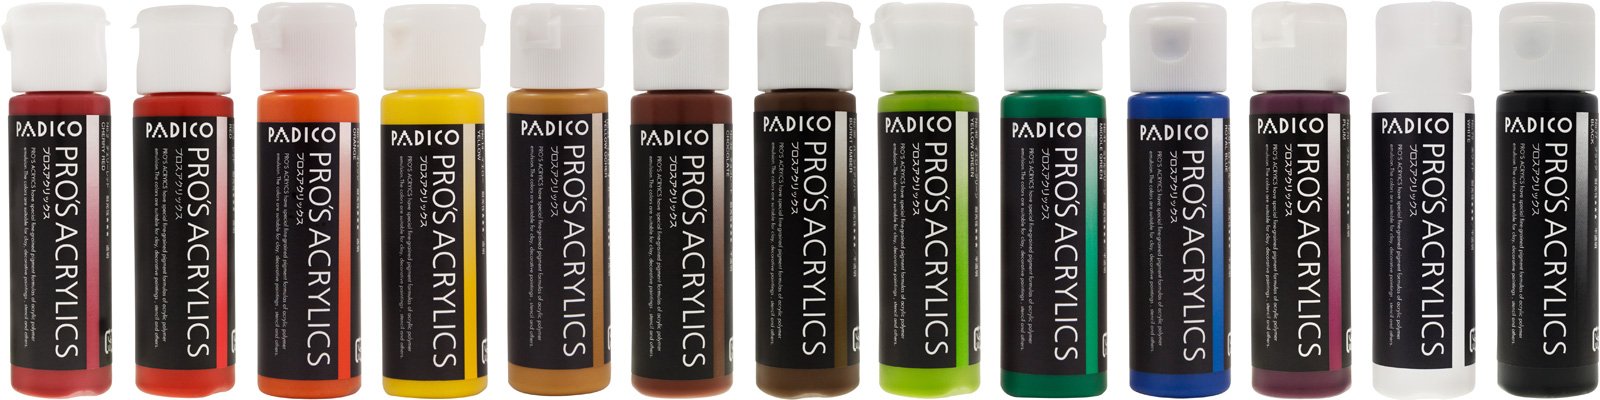 プロスアクリックス 単色13色 - Products | 製品情報 | PADICO [株式